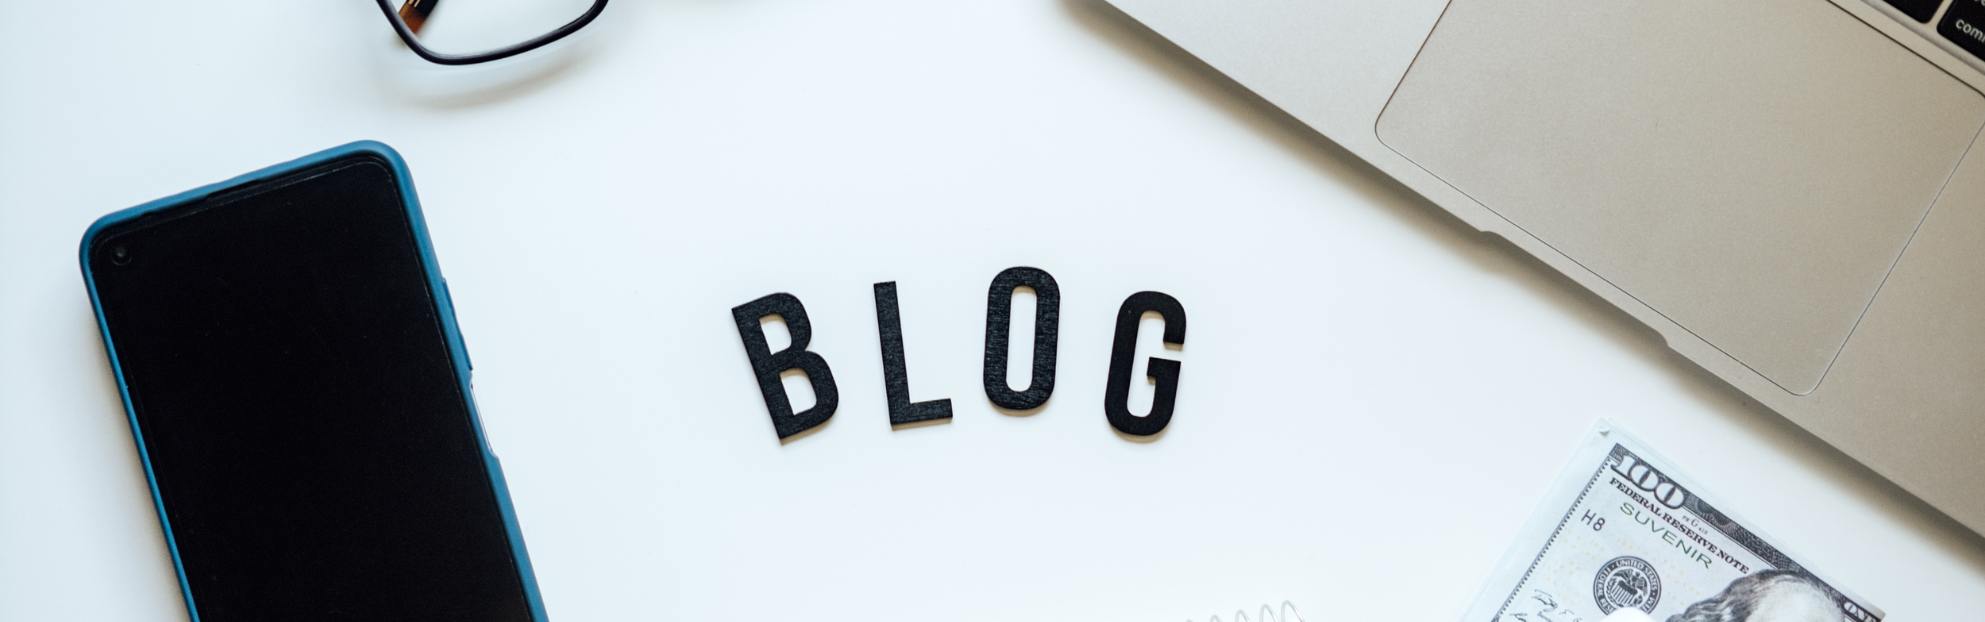 Blogartikel